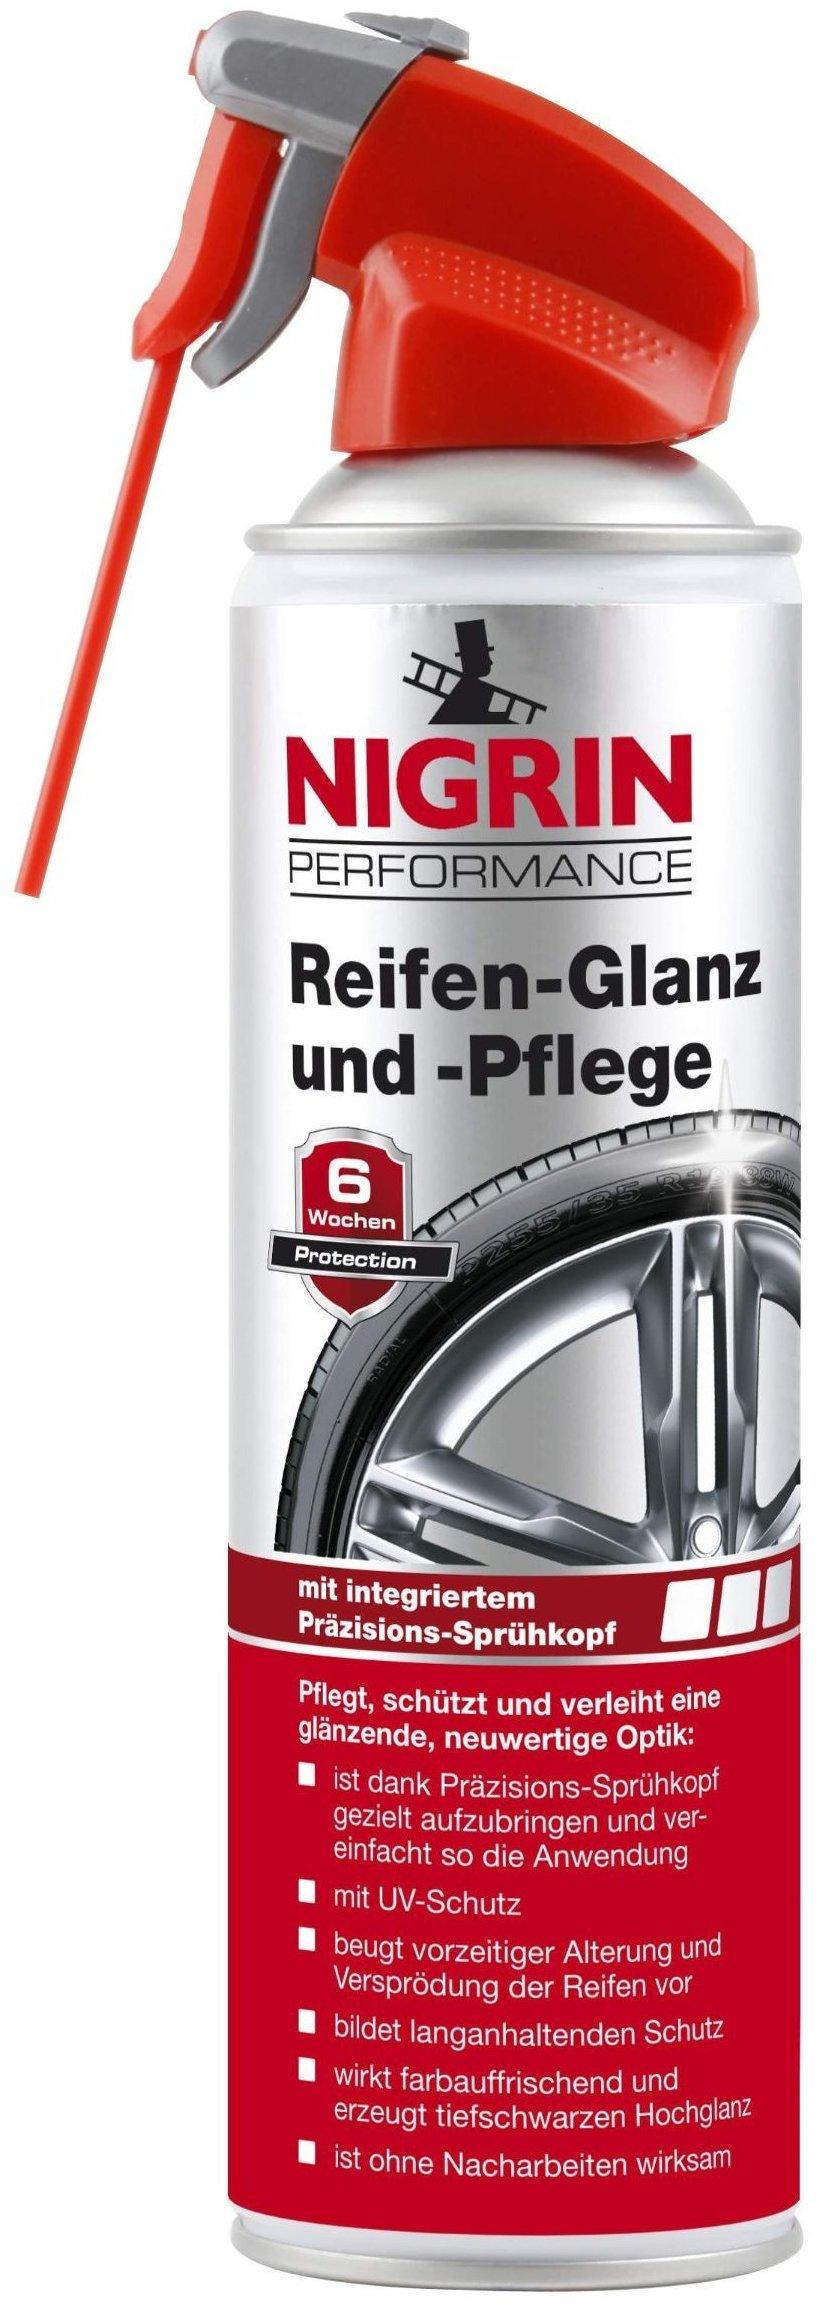 Nigrin Performance Reifen-Glanz und -Pflege Test - Testbericht.de September  2022